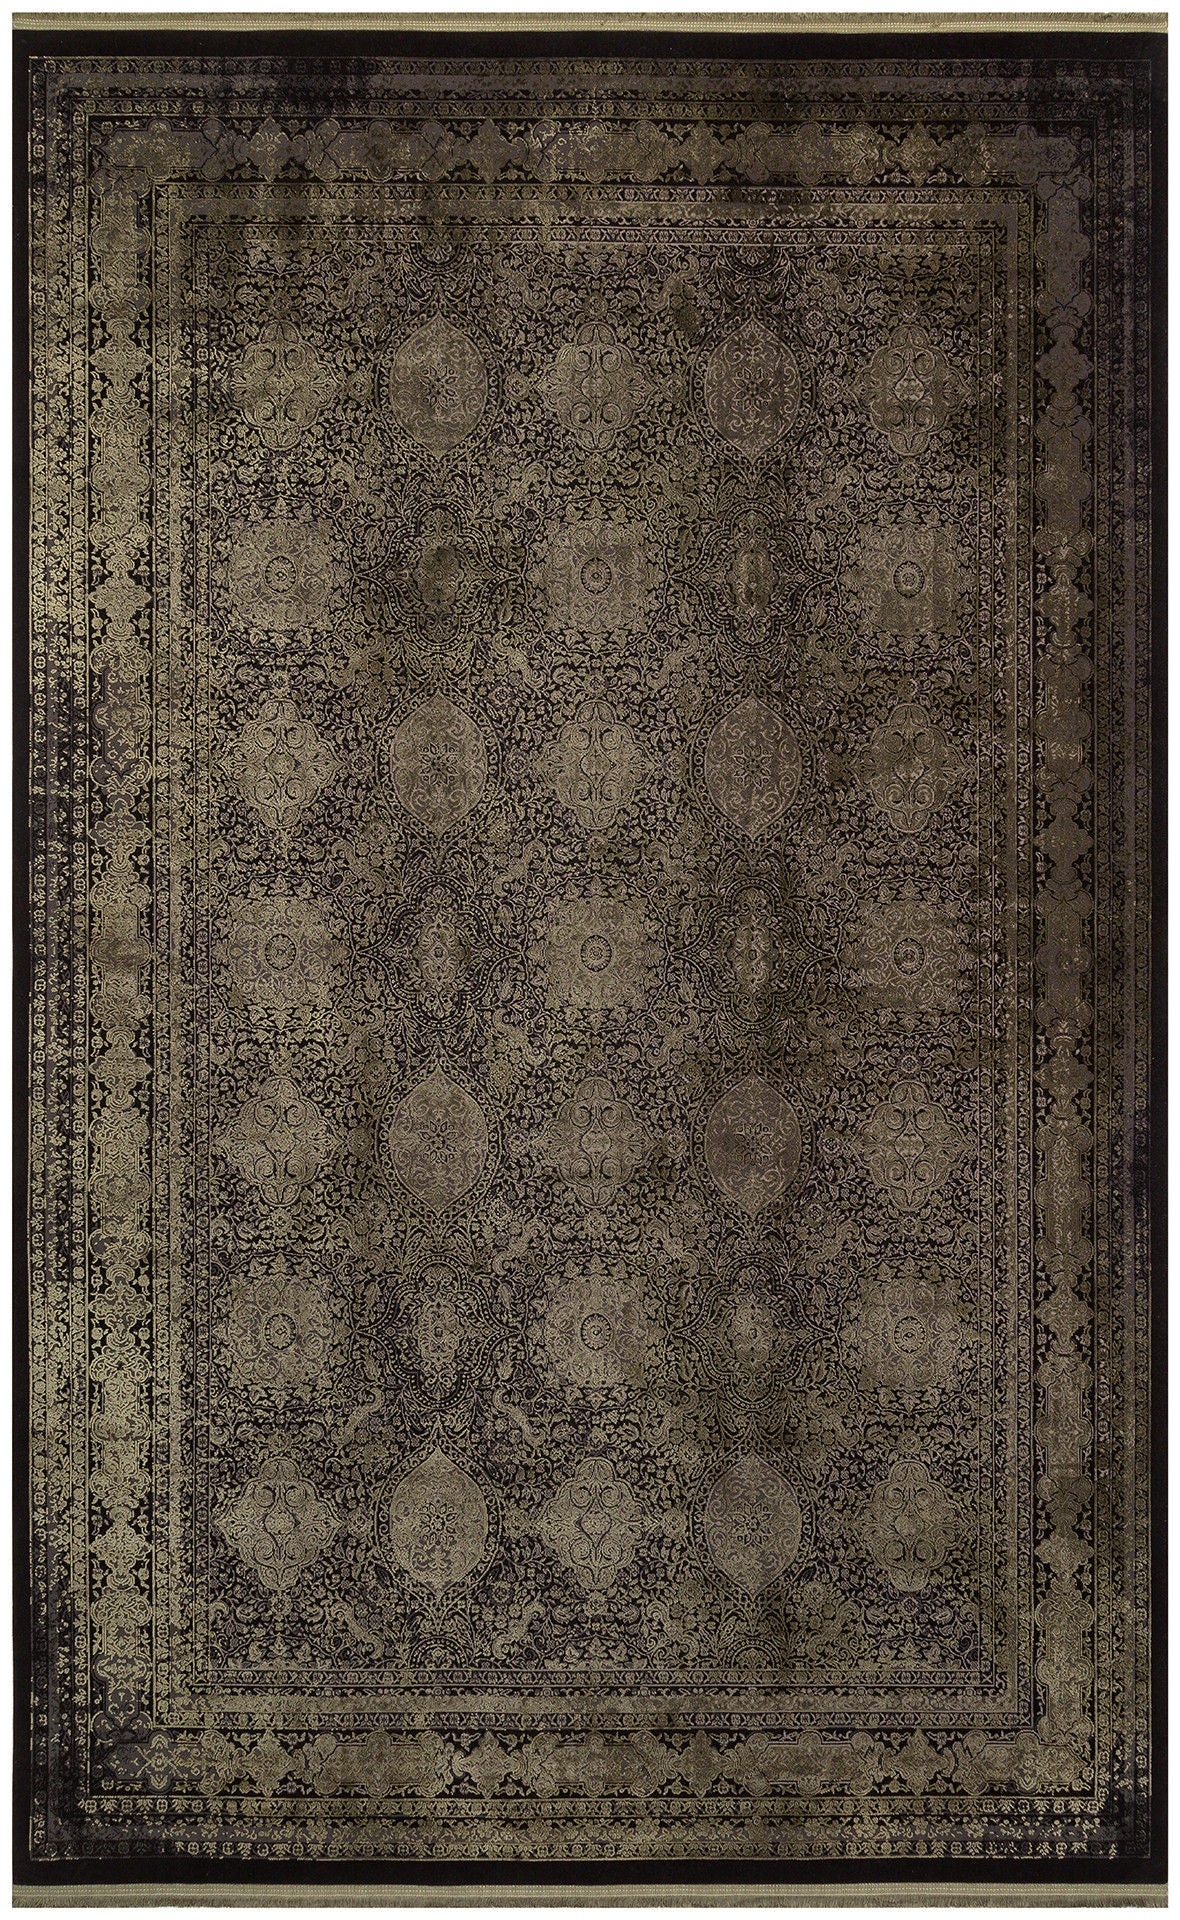 Ant 02 Antrasit grøn - tæppe (160 x 230)